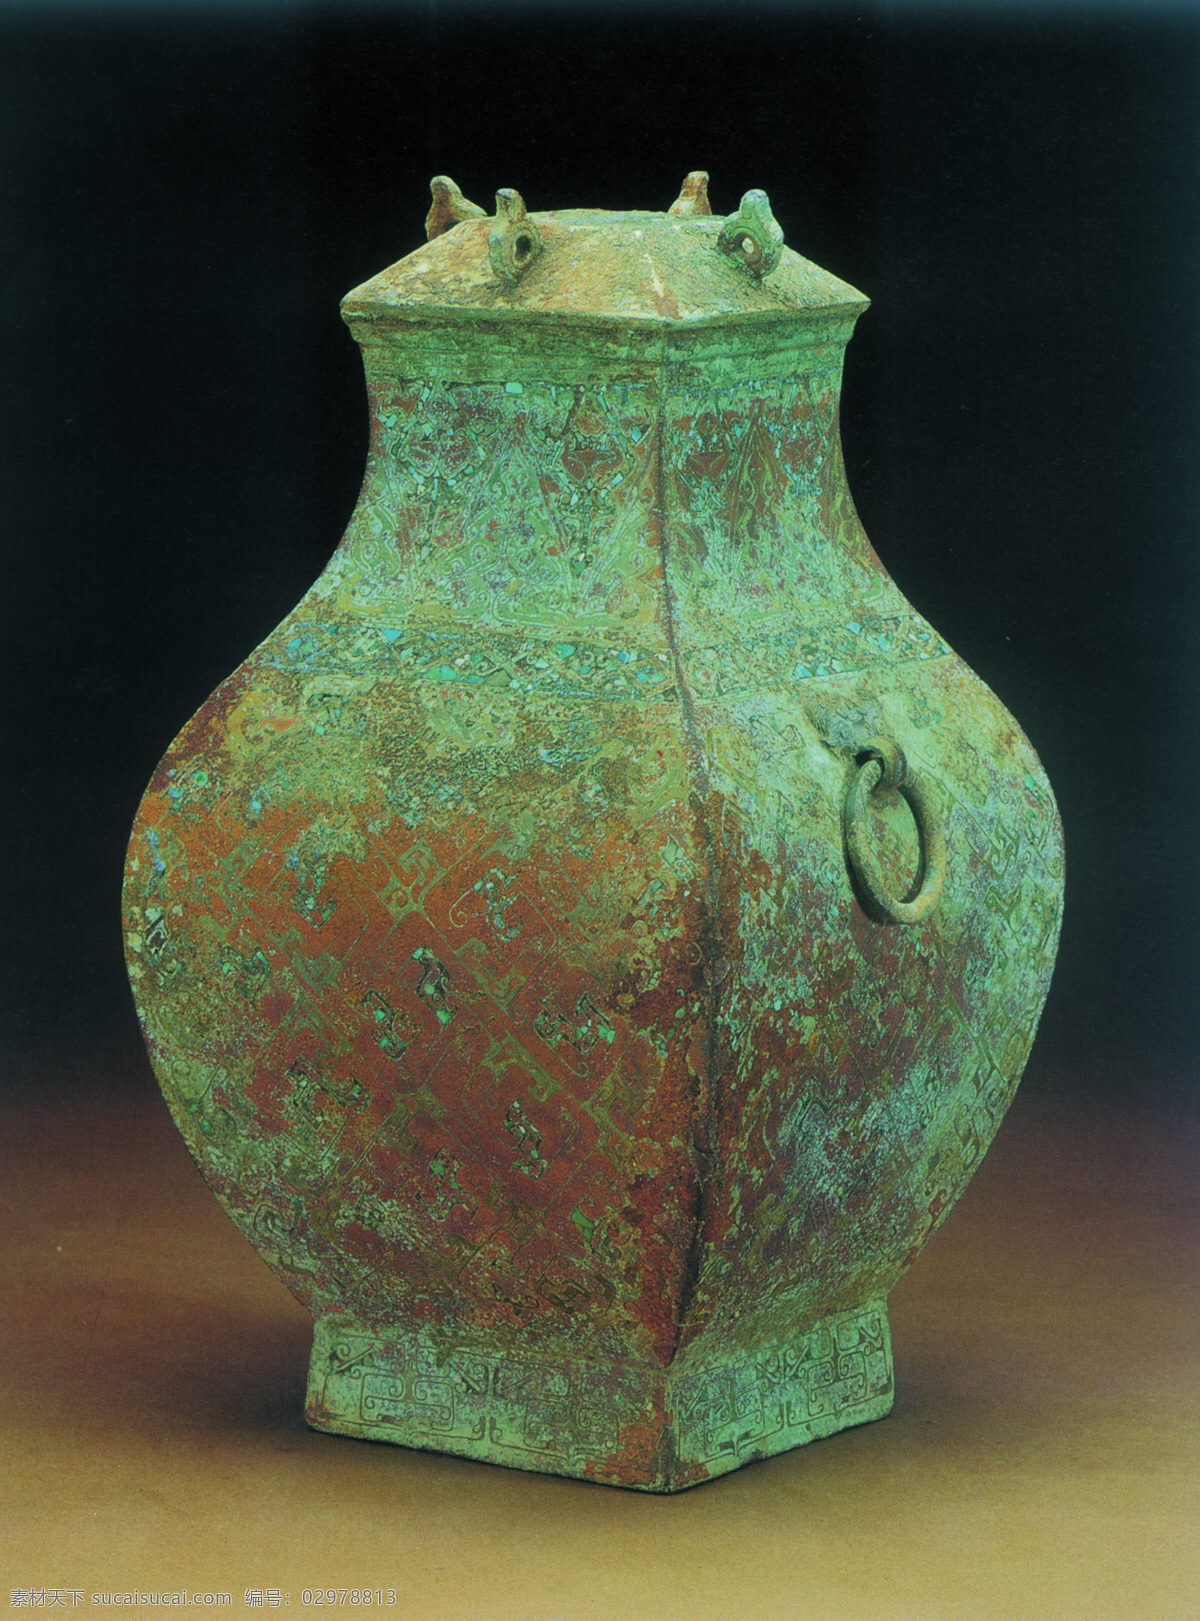 青铜器图片 传统 中国元素 青铜器 工艺品 中国风 中国 古典 艺术 篇 文化艺术 传统文化